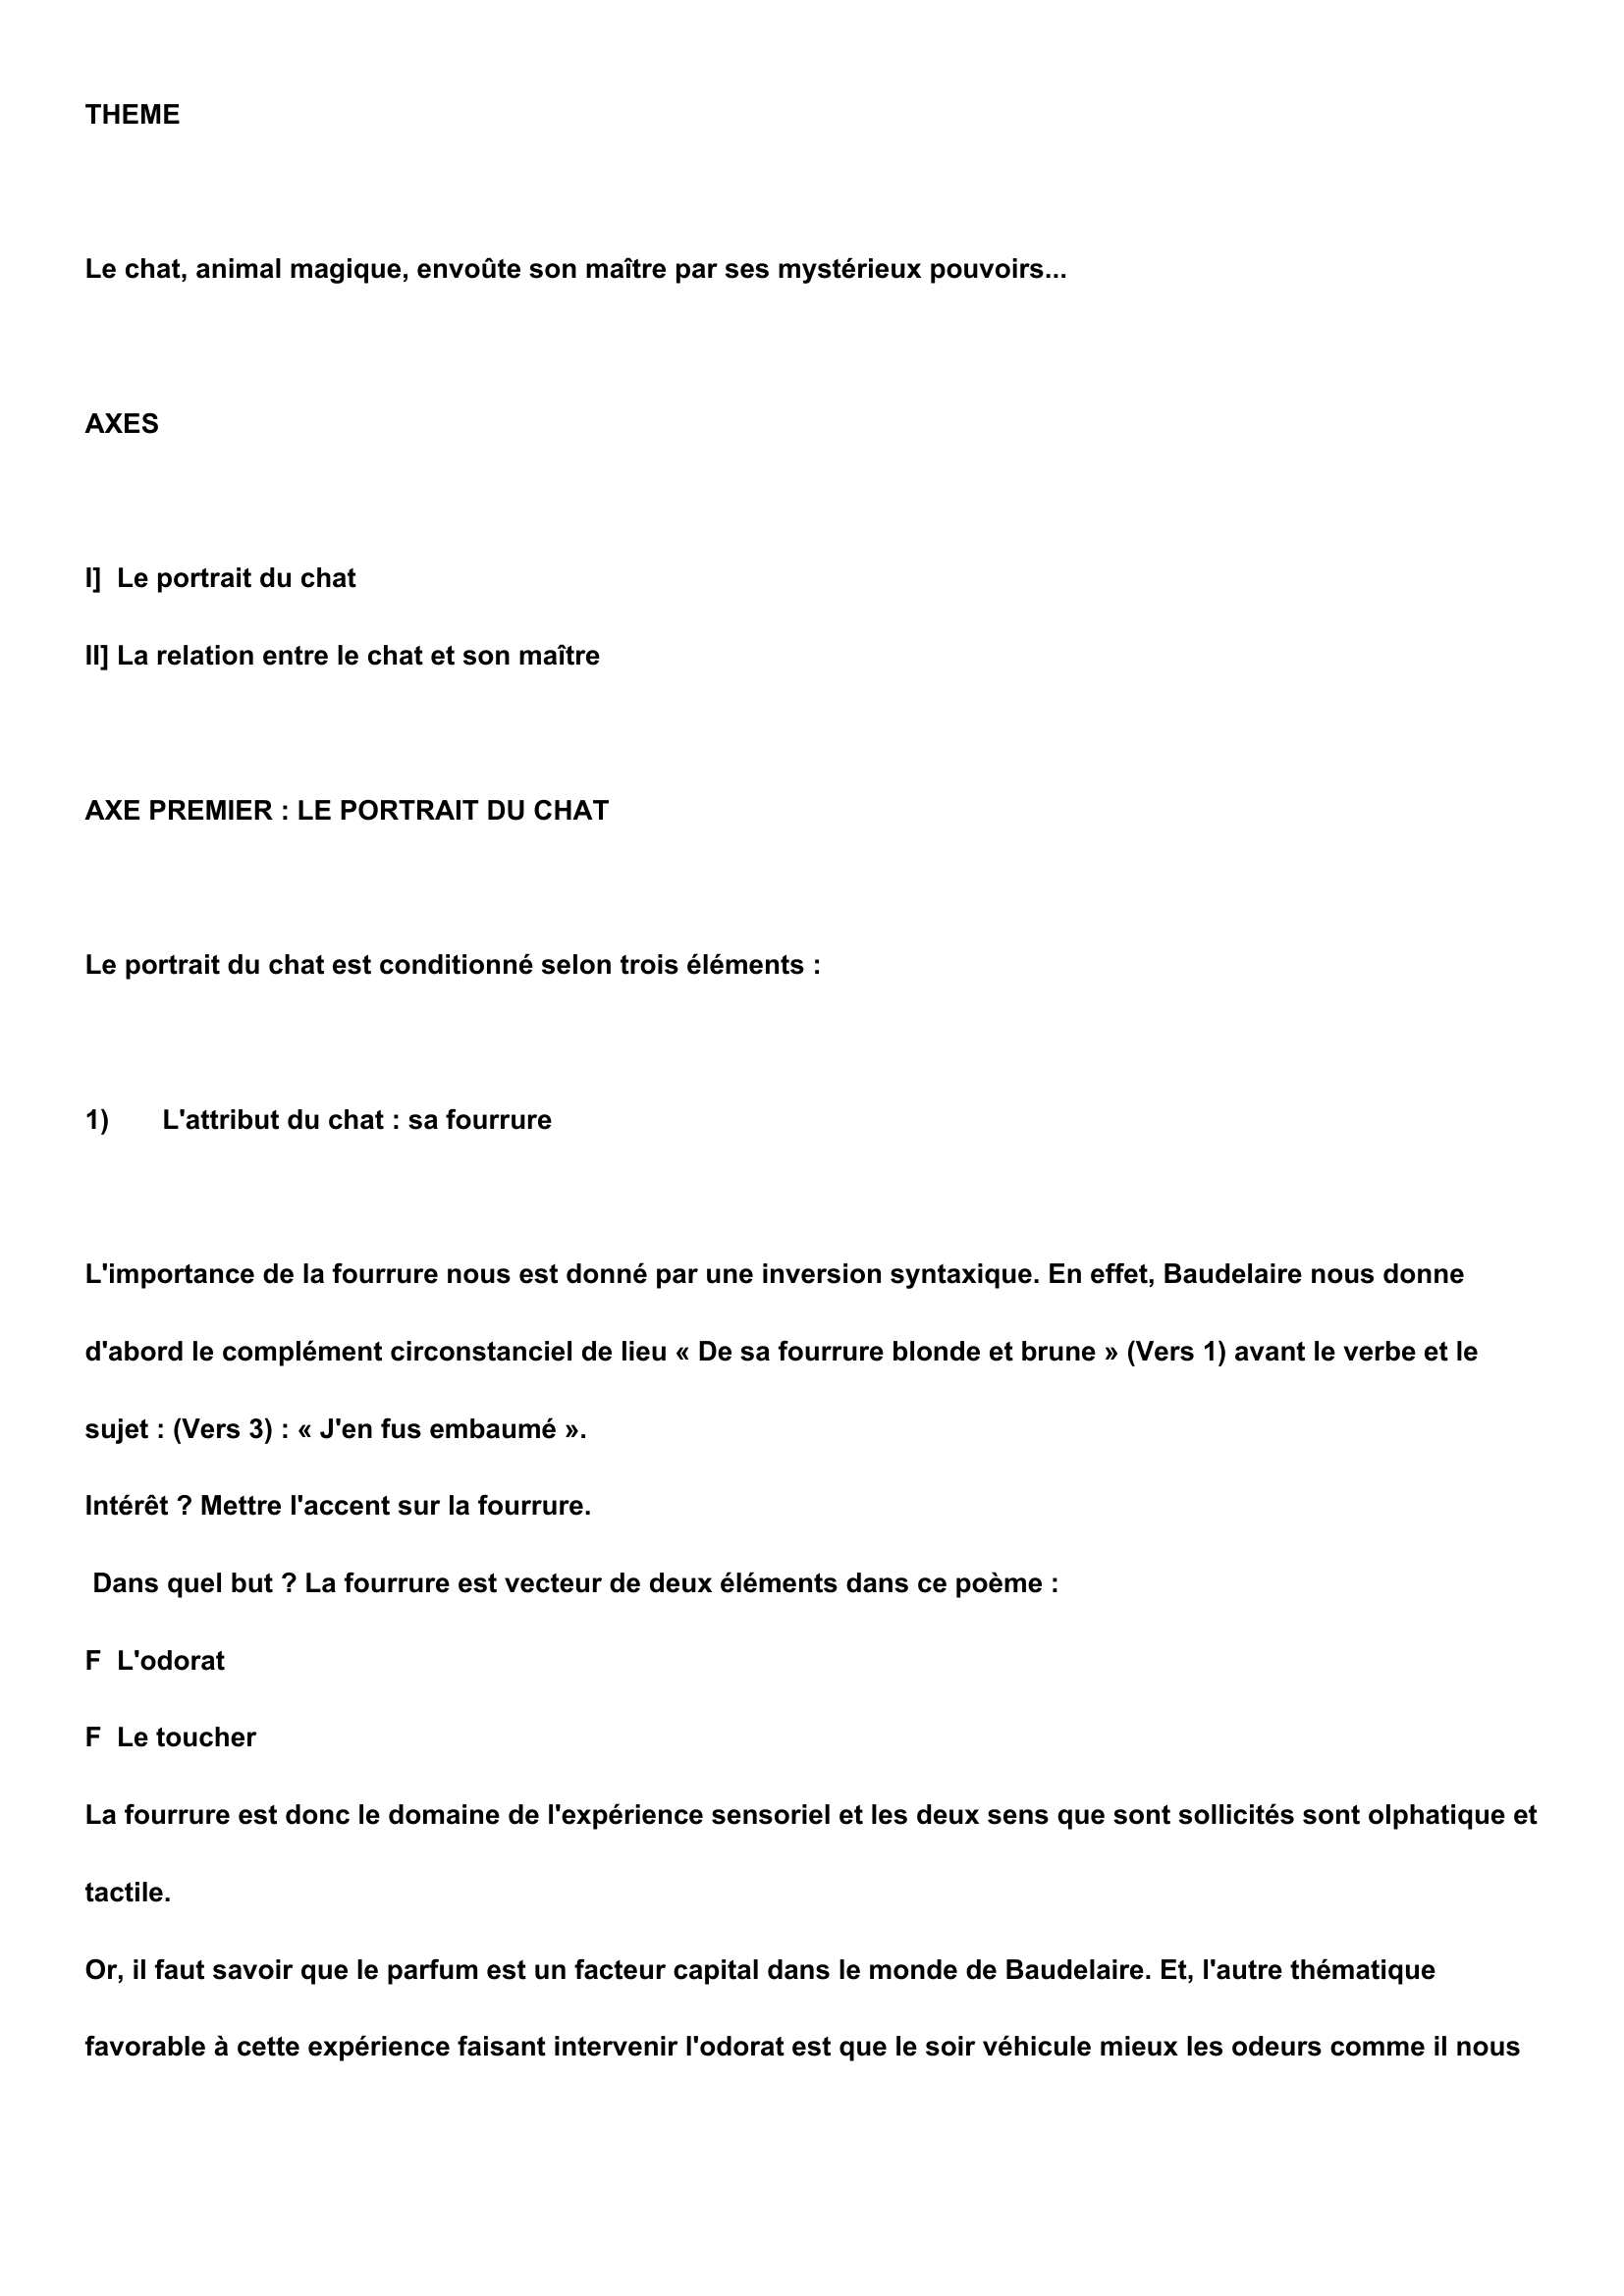 Prévisualisation du document Lecture analytique LE CHAT de Charles Baudelaire